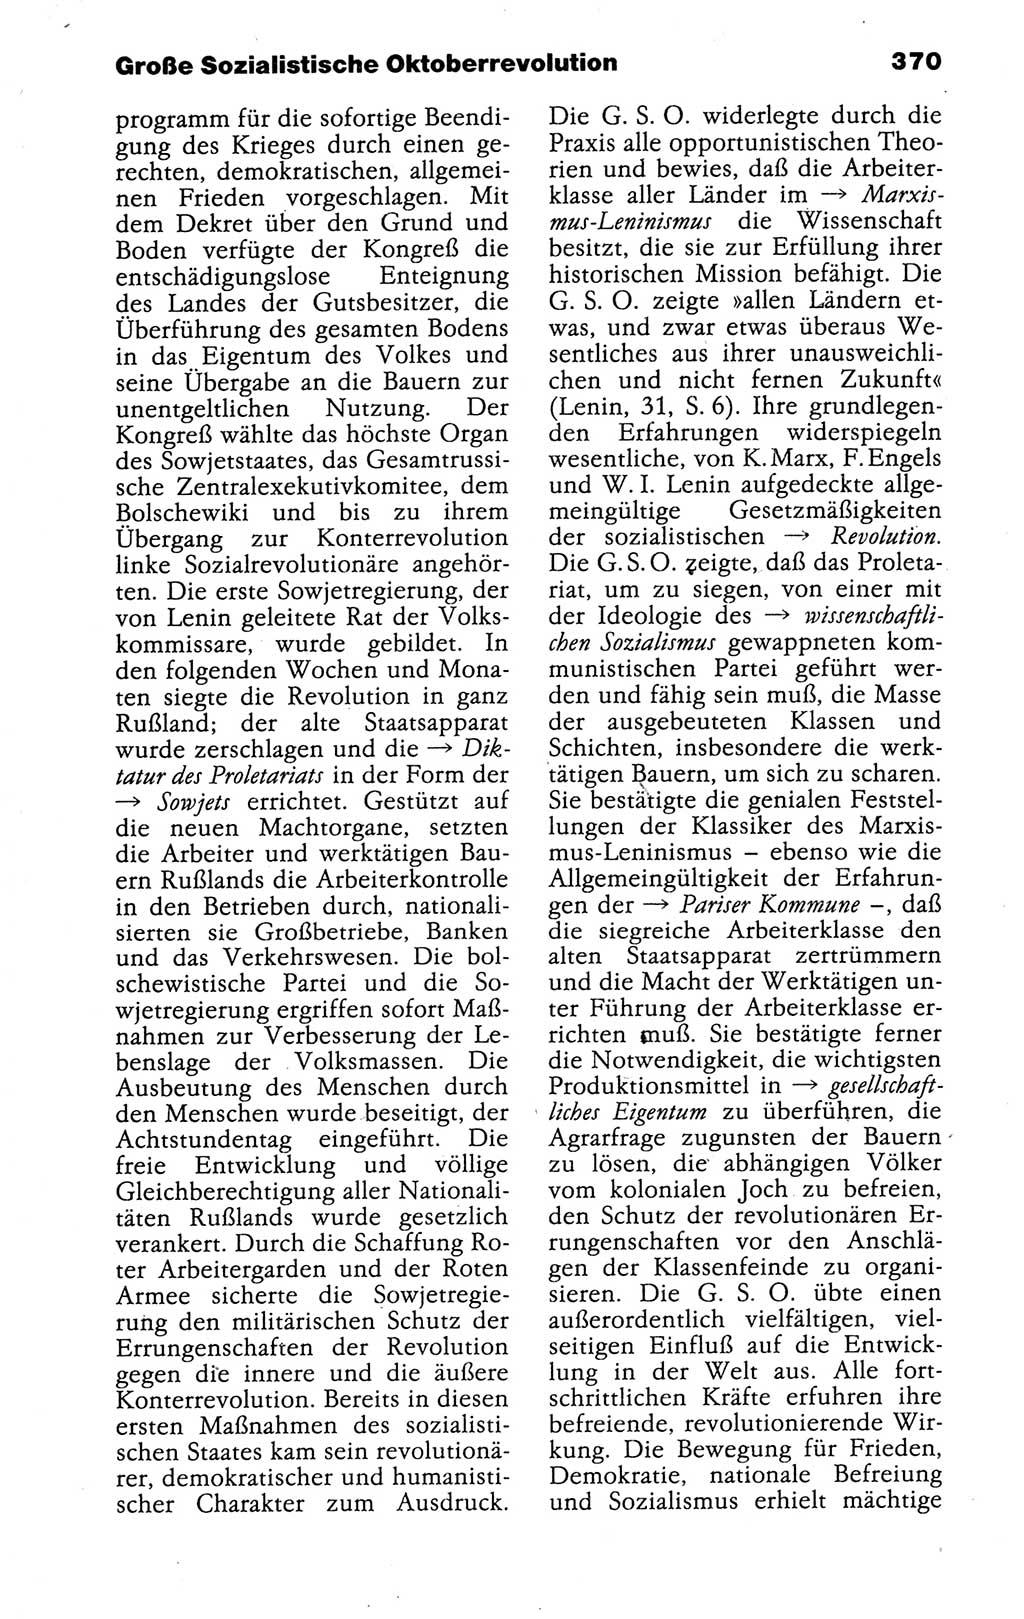 Kleines politisches Wörterbuch [Deutsche Demokratische Republik (DDR)] 1988, Seite 370 (Kl. pol. Wb. DDR 1988, S. 370)